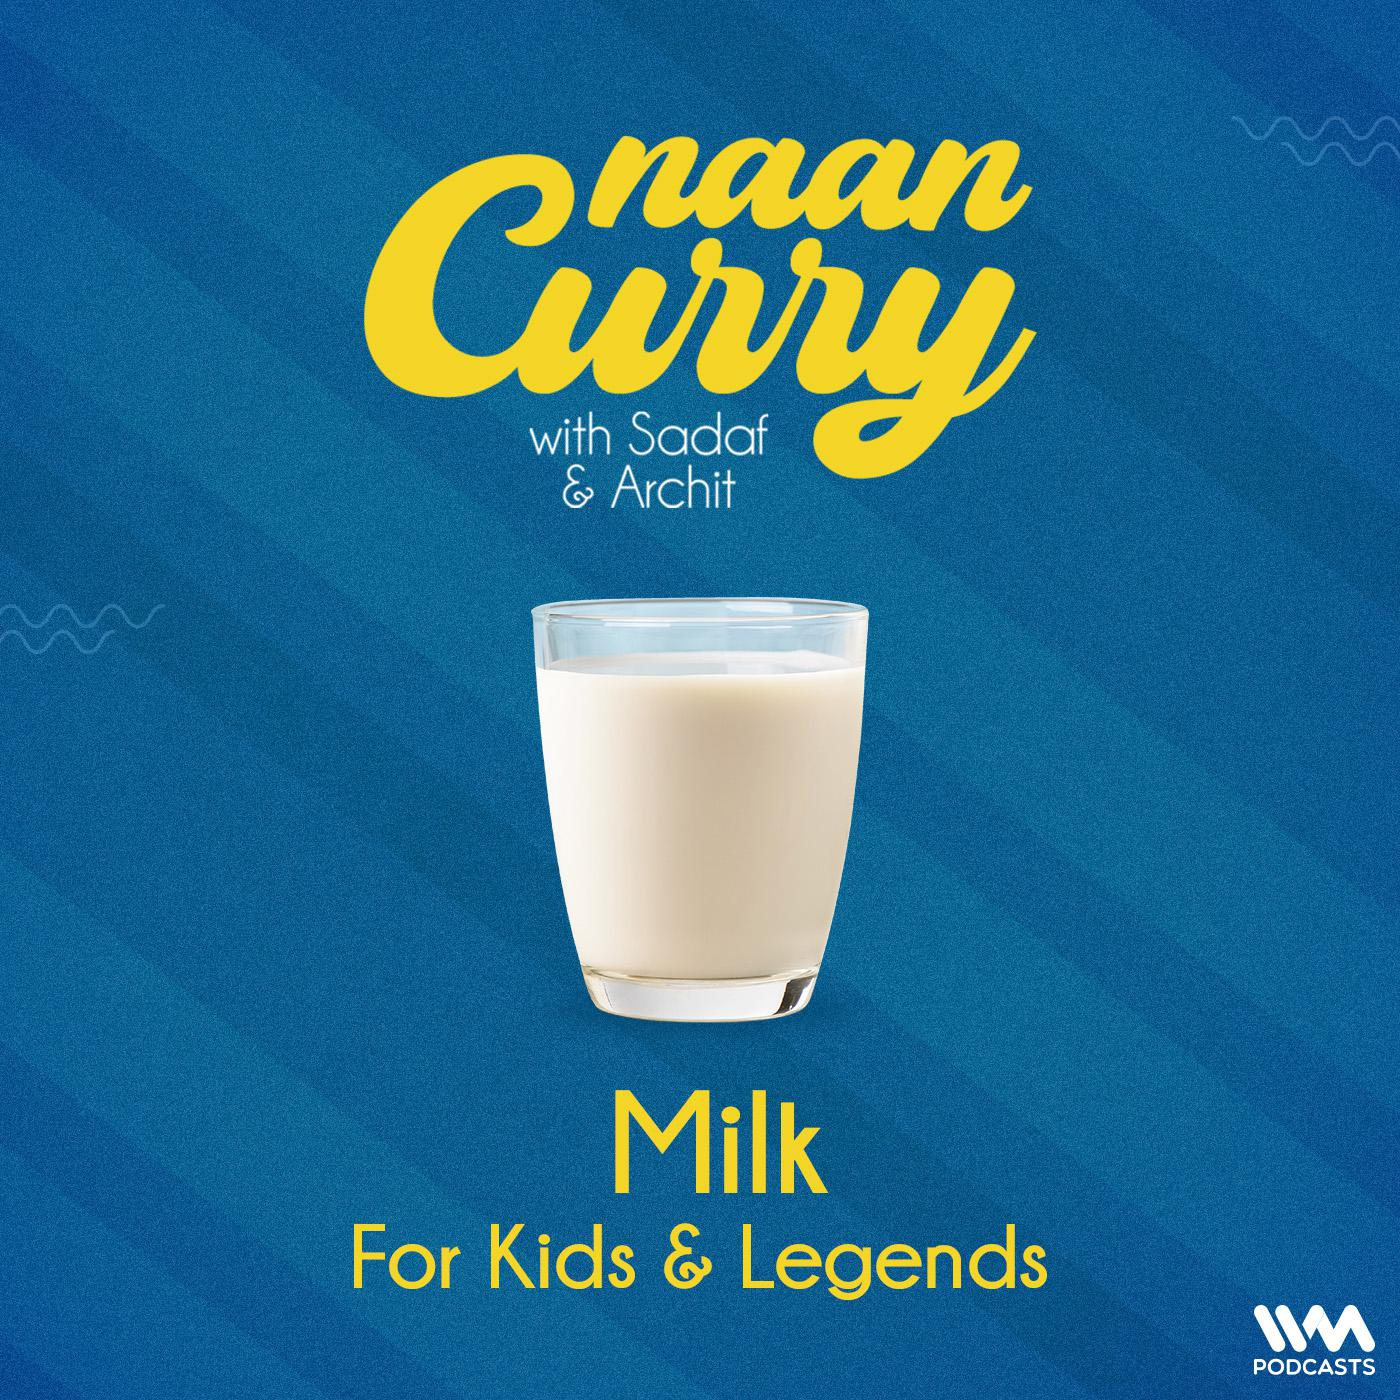 Milk: For Kids & Legends